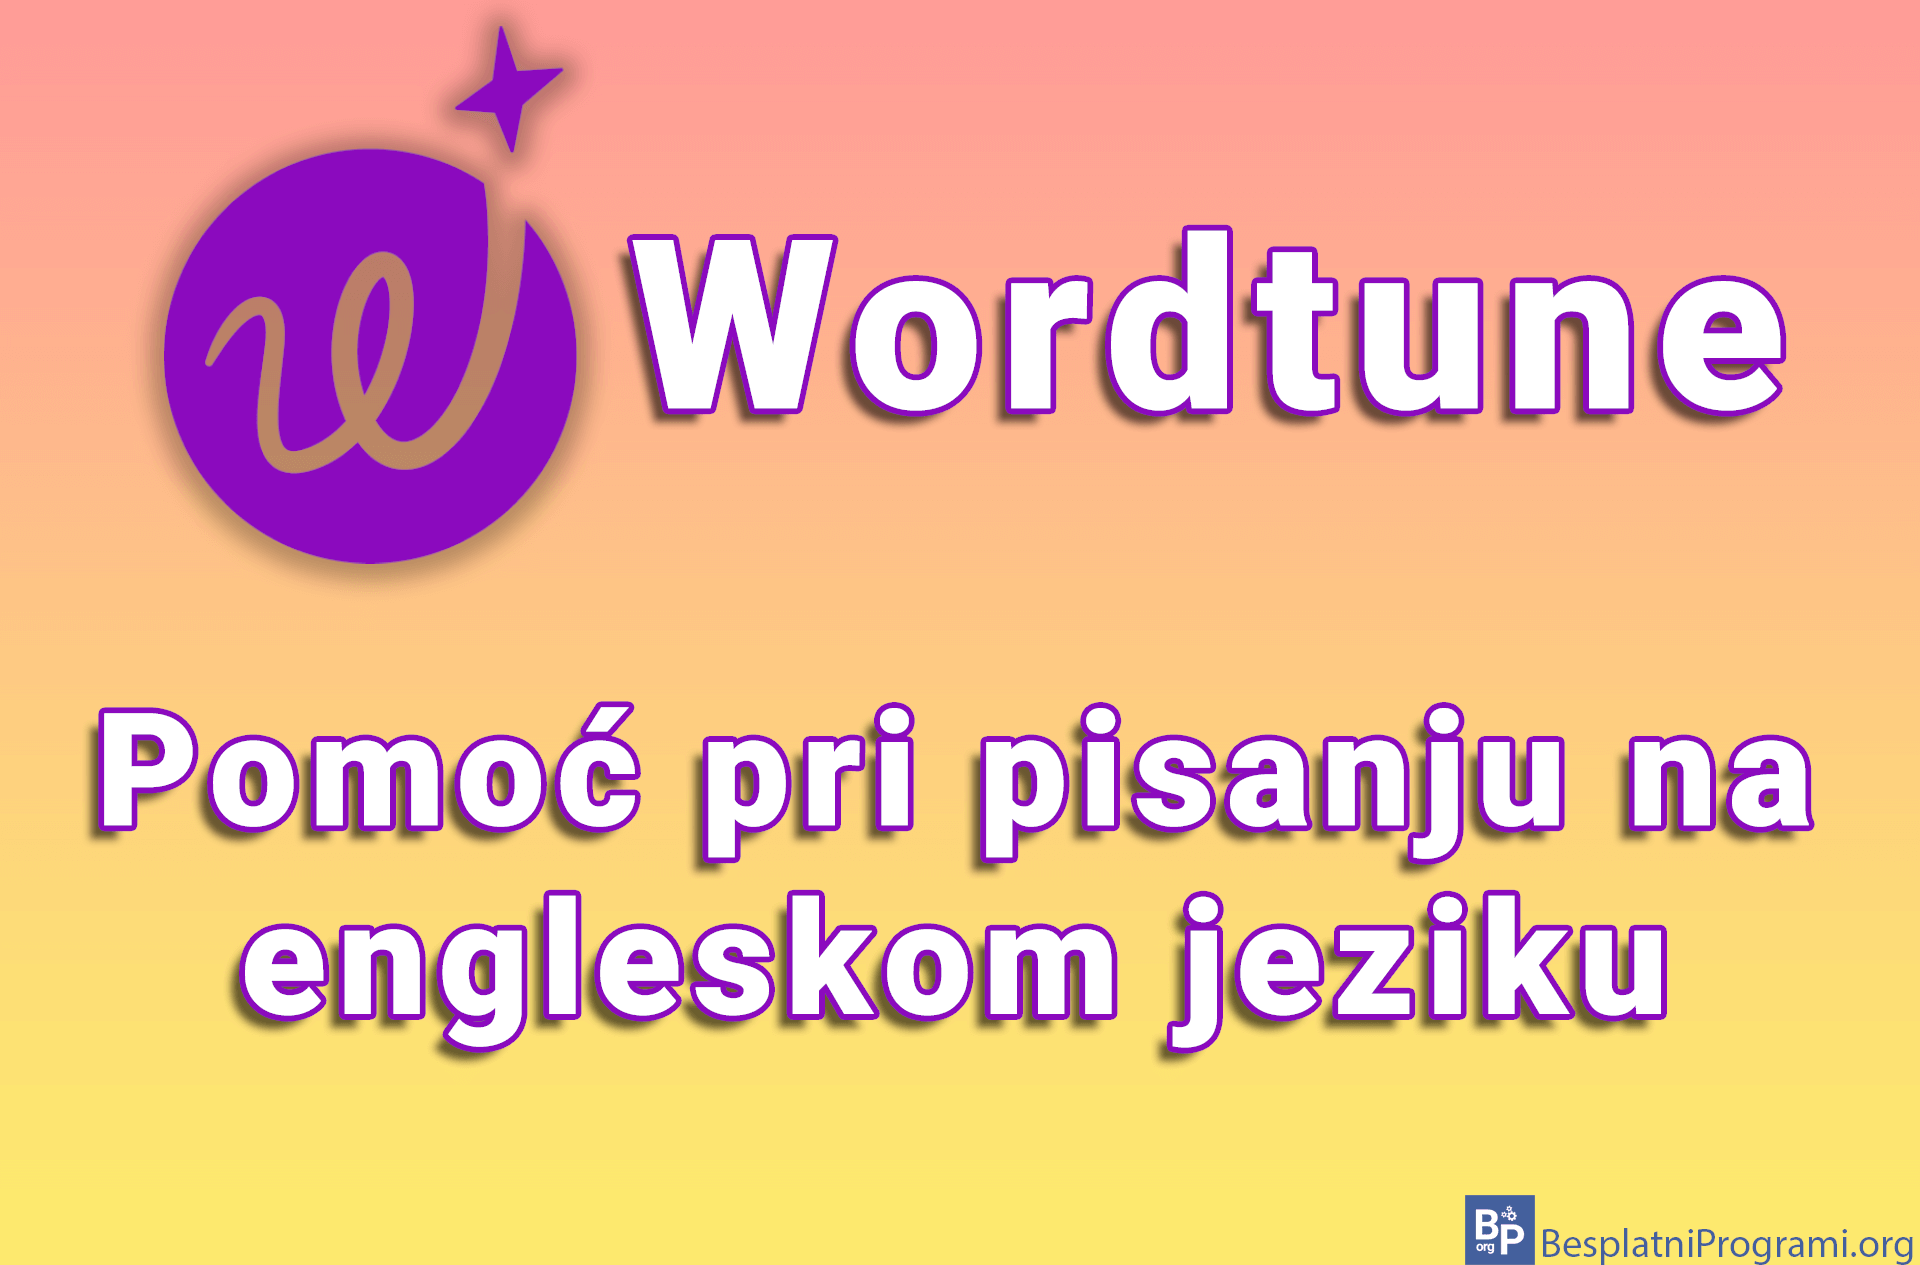 Wordtune – pomoć pri pisanju na engleskom jeziku